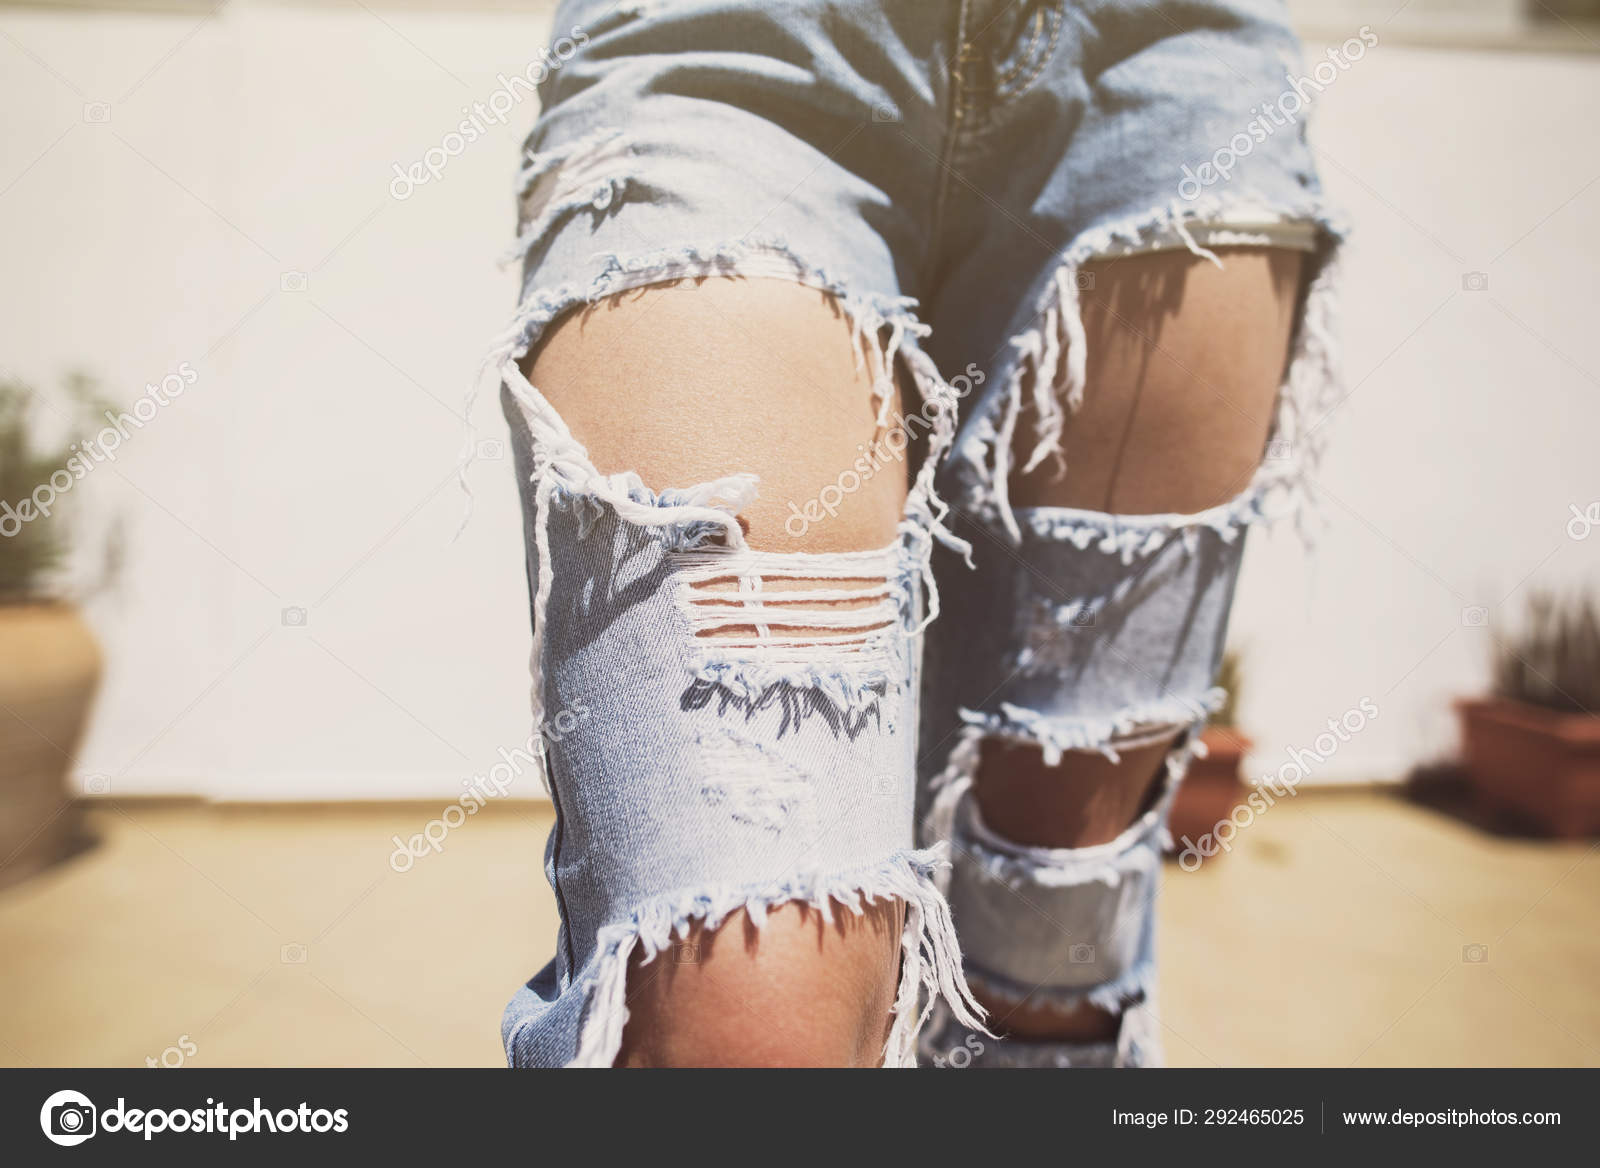 Stockfoto's van Jeans met rechtenvrije afbeeldingen van Jeans gaten | Depositphotos